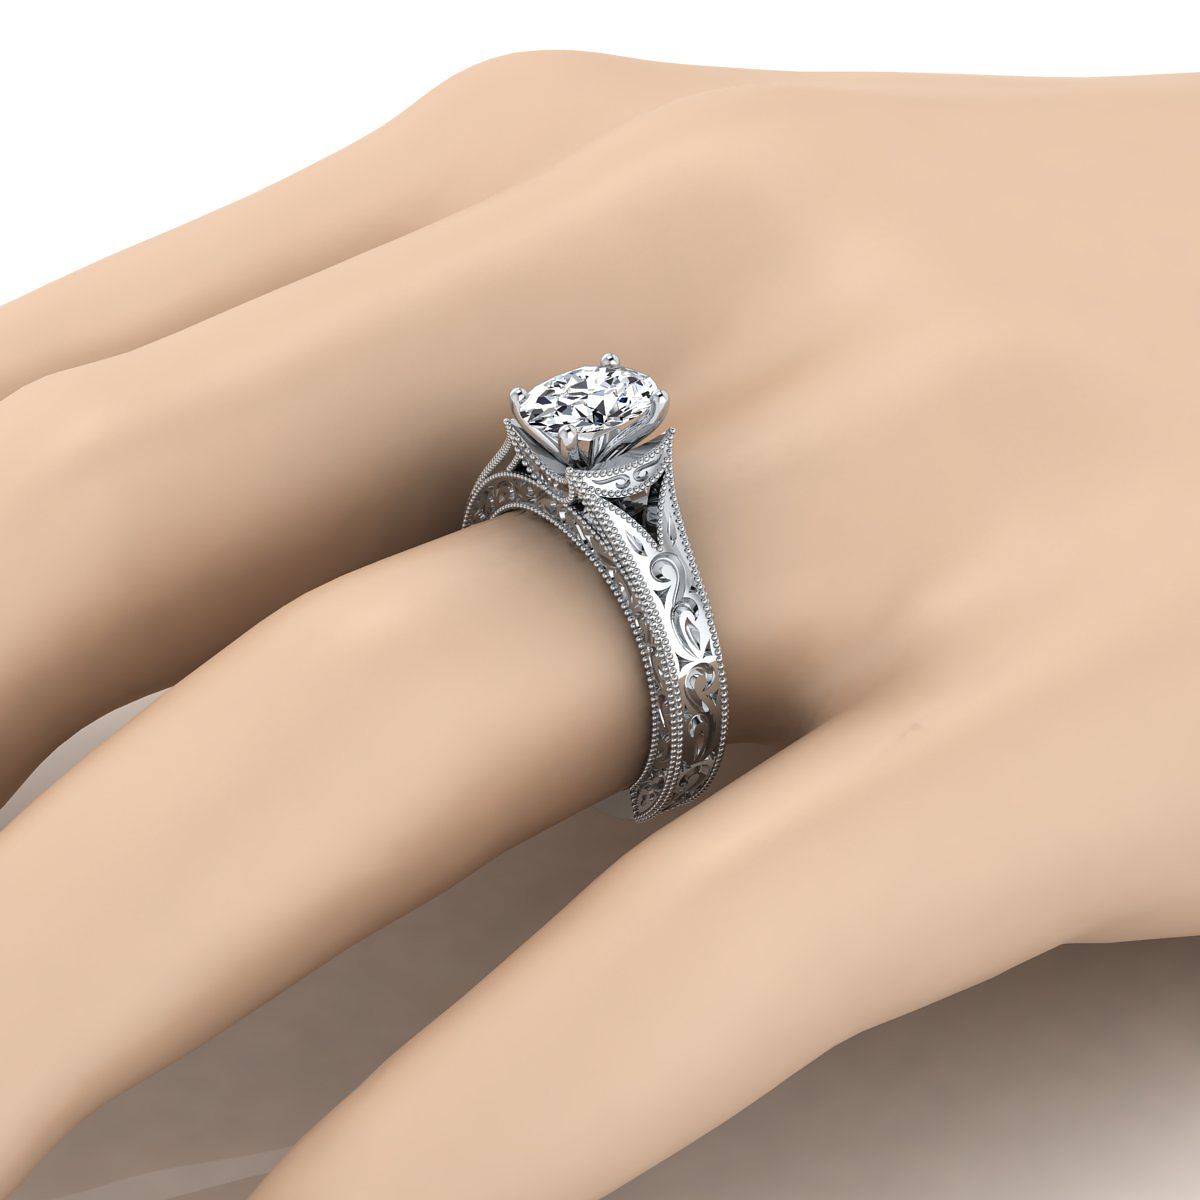 แหวนหมั้นวงรีทองคำขาว 18K สลักด้วยมือและแหวนหมั้น Solitaire วินเทจ Milgrain